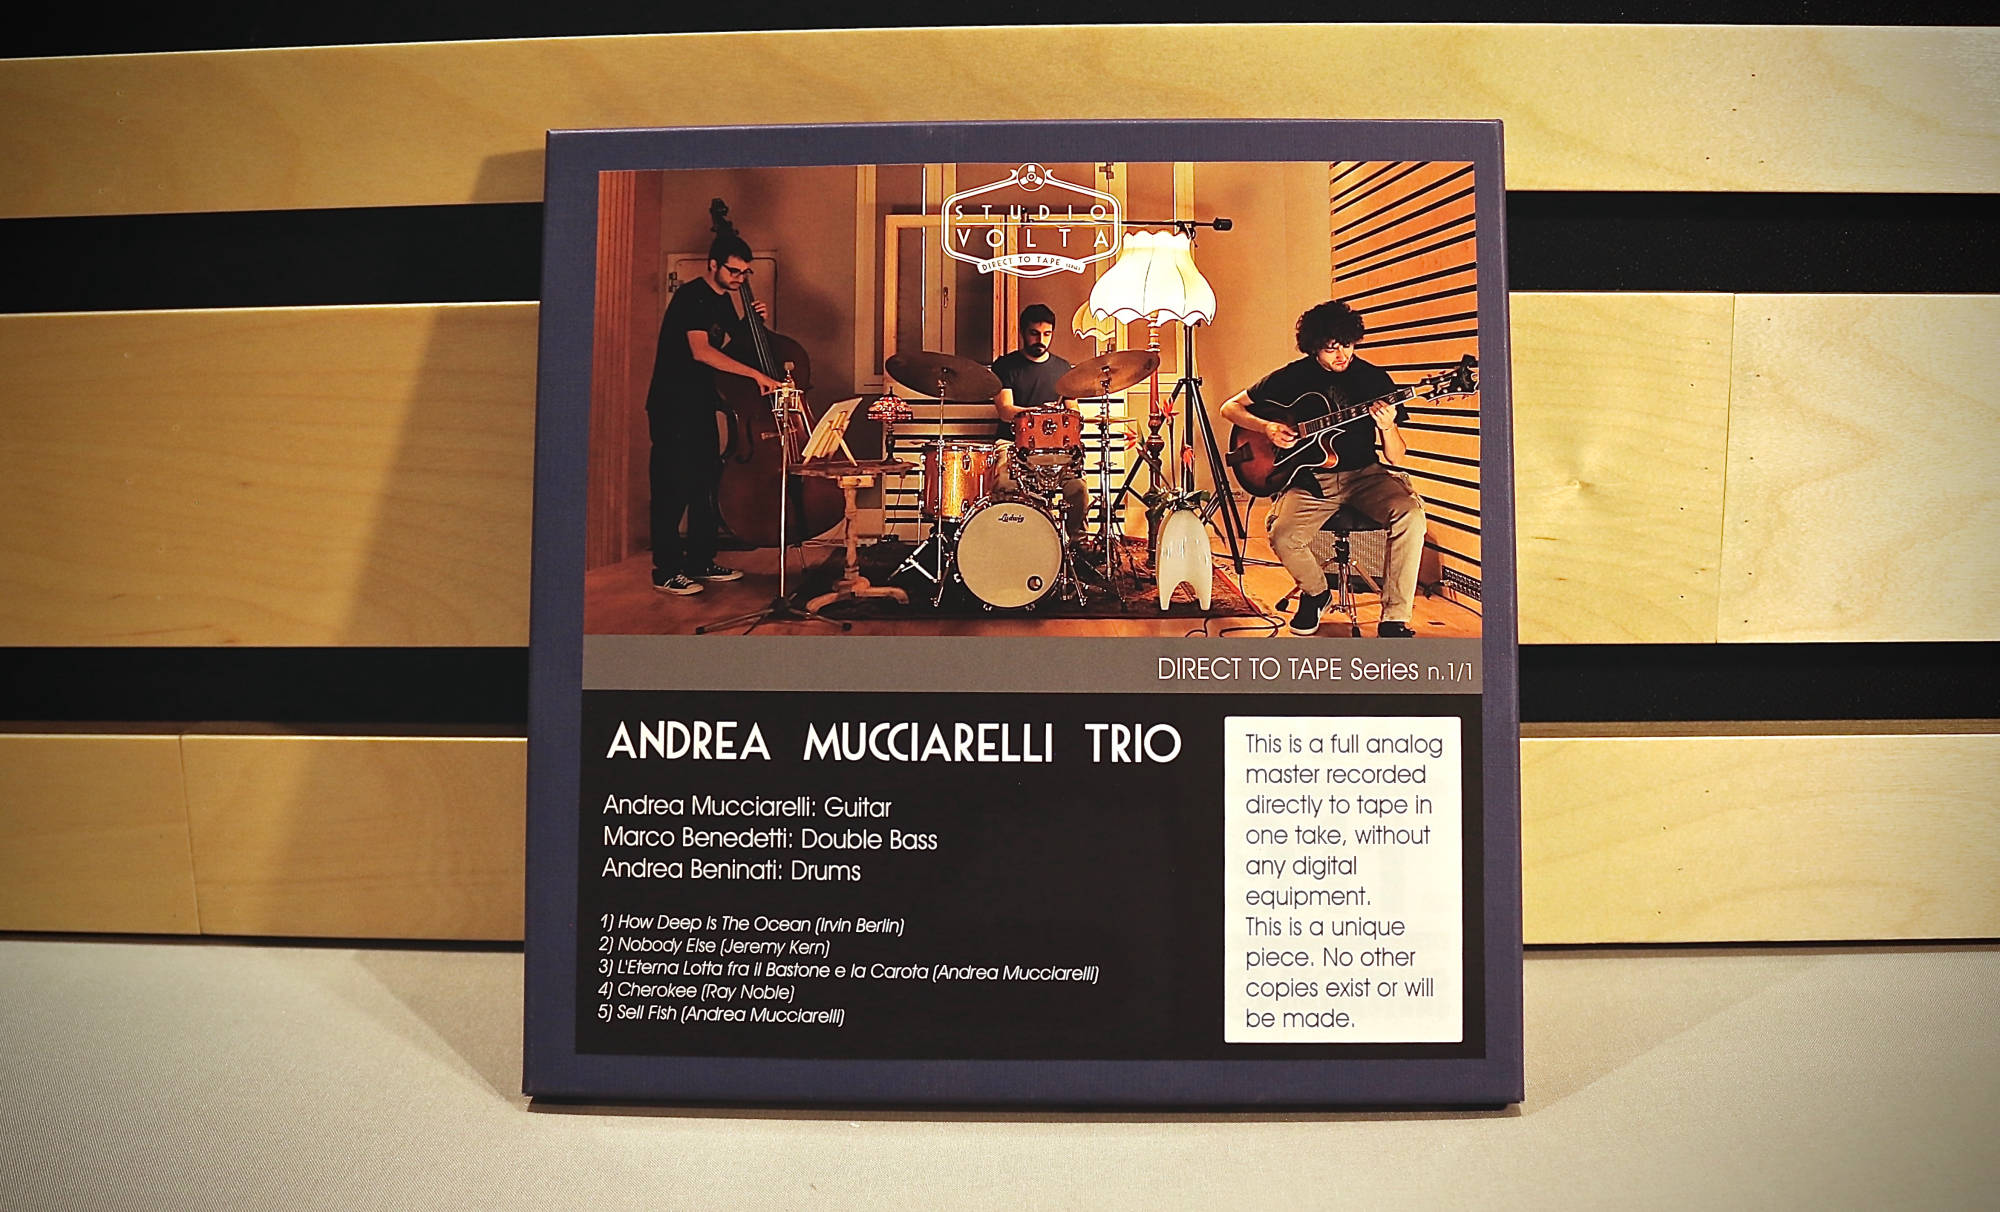 Andrea Mucciarelli Trio DIRECT TO TAPE Series